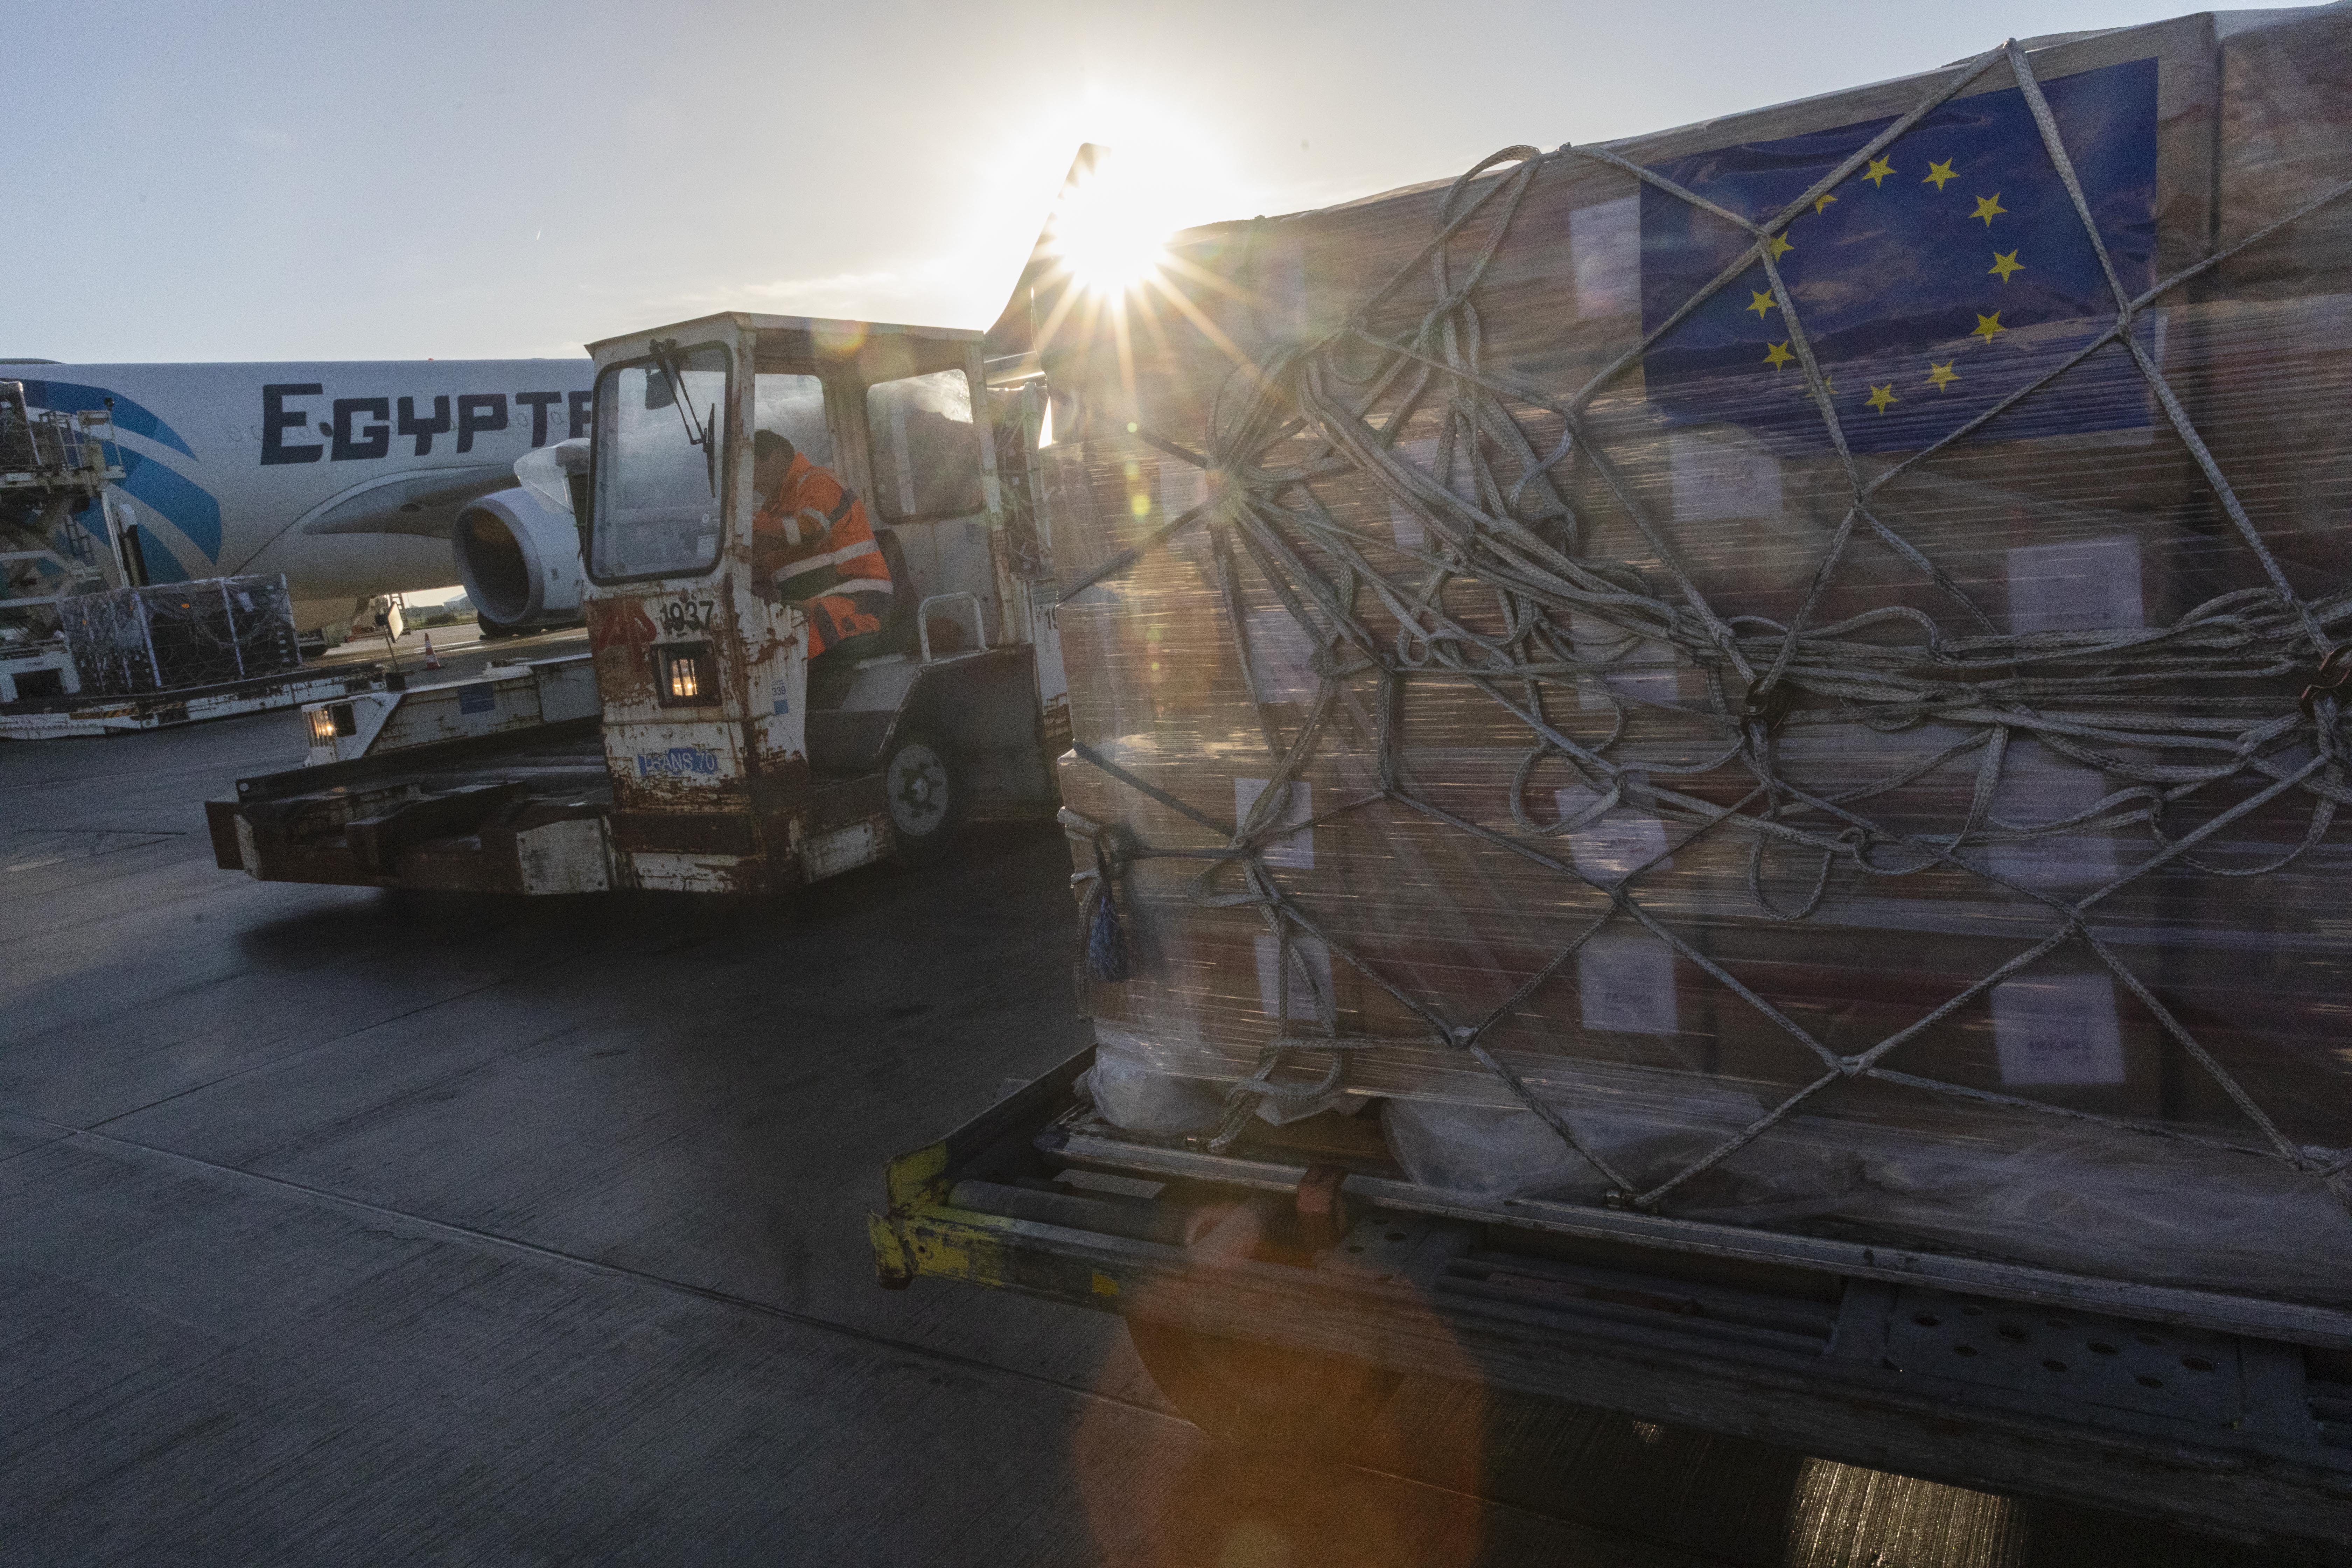 Visite de Janez Lenarčič, European Commissioner, à l'aéroport d'Ostende pour le chargement d'un cargo humanitaire vers Gaza